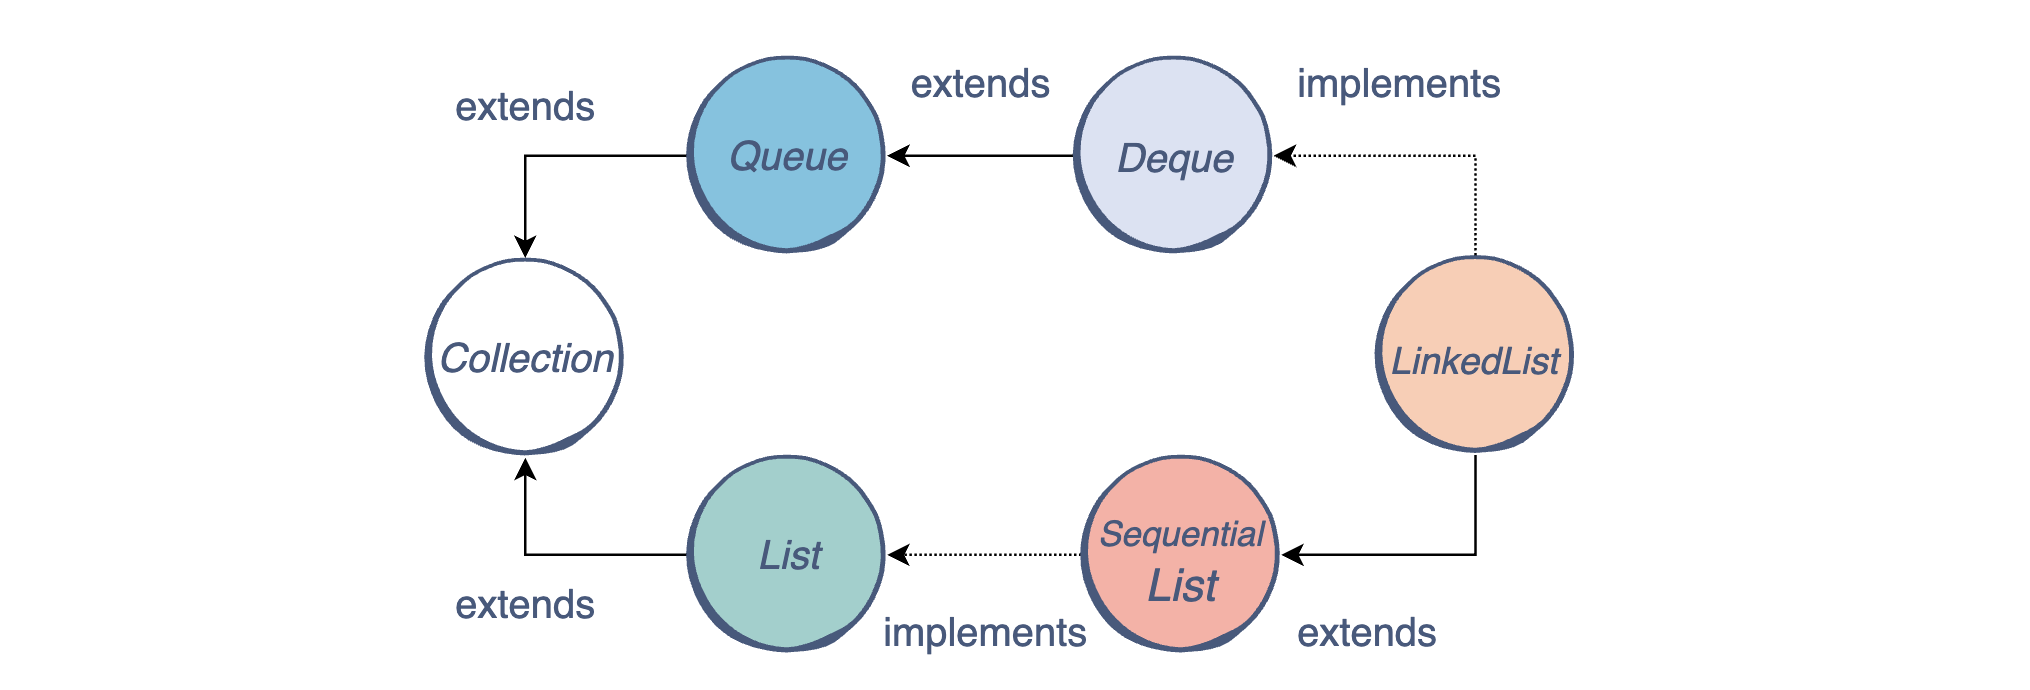 Implementation java. Link list джава. Структура LINKEDLIST. Список структур данных java. Связанный список js.